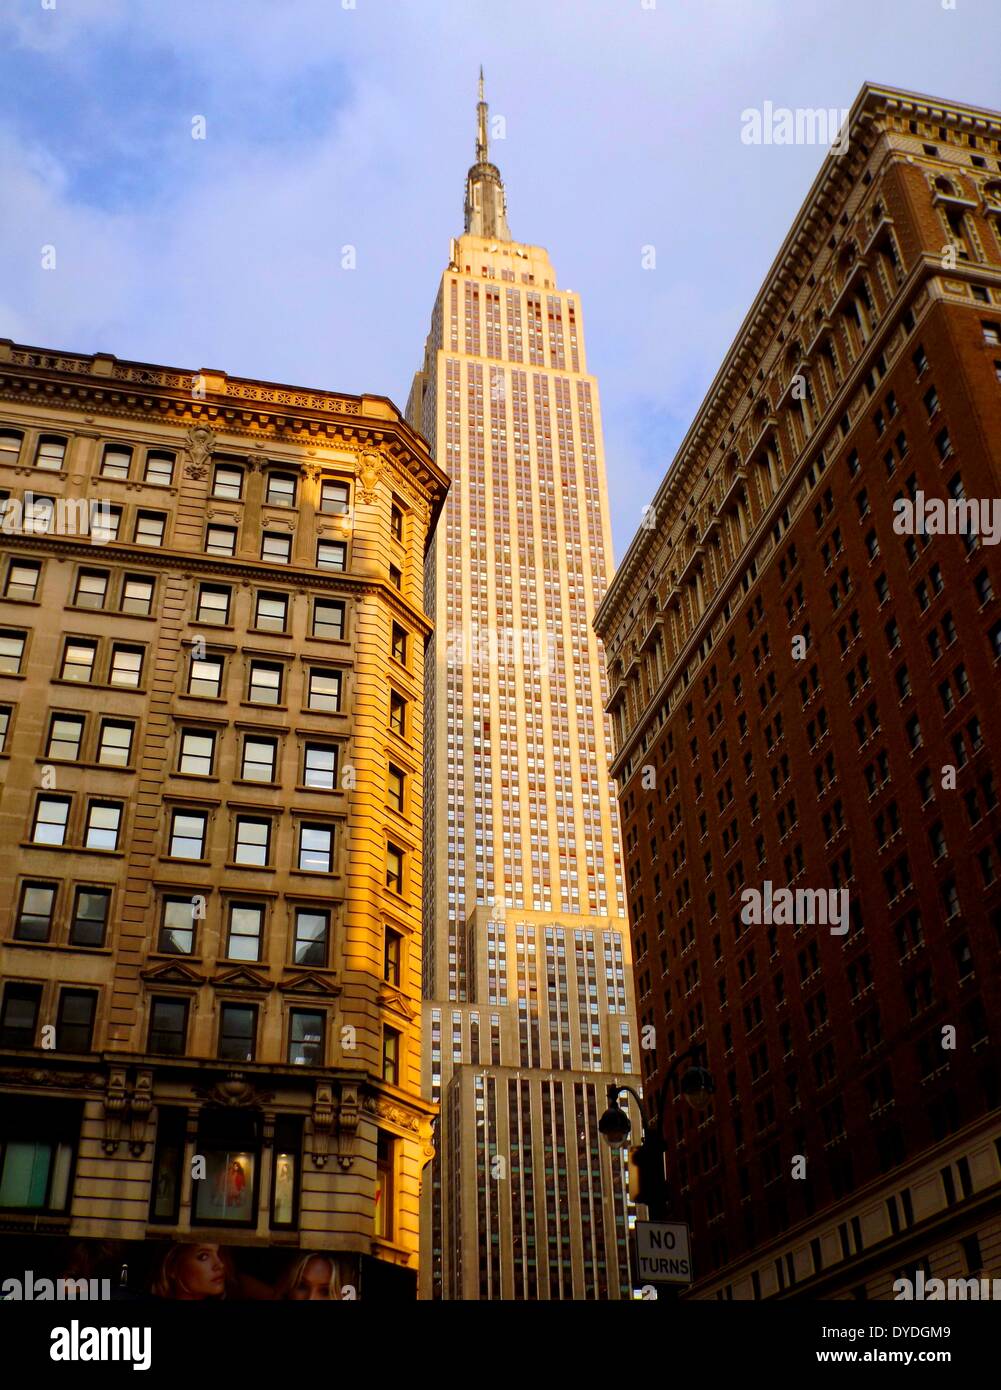 A finales del siglo XIX o principios del siglo XX, oficinas y apartamentos están sentados debajo el alza del Empire State Building, Nueva York Foto de stock